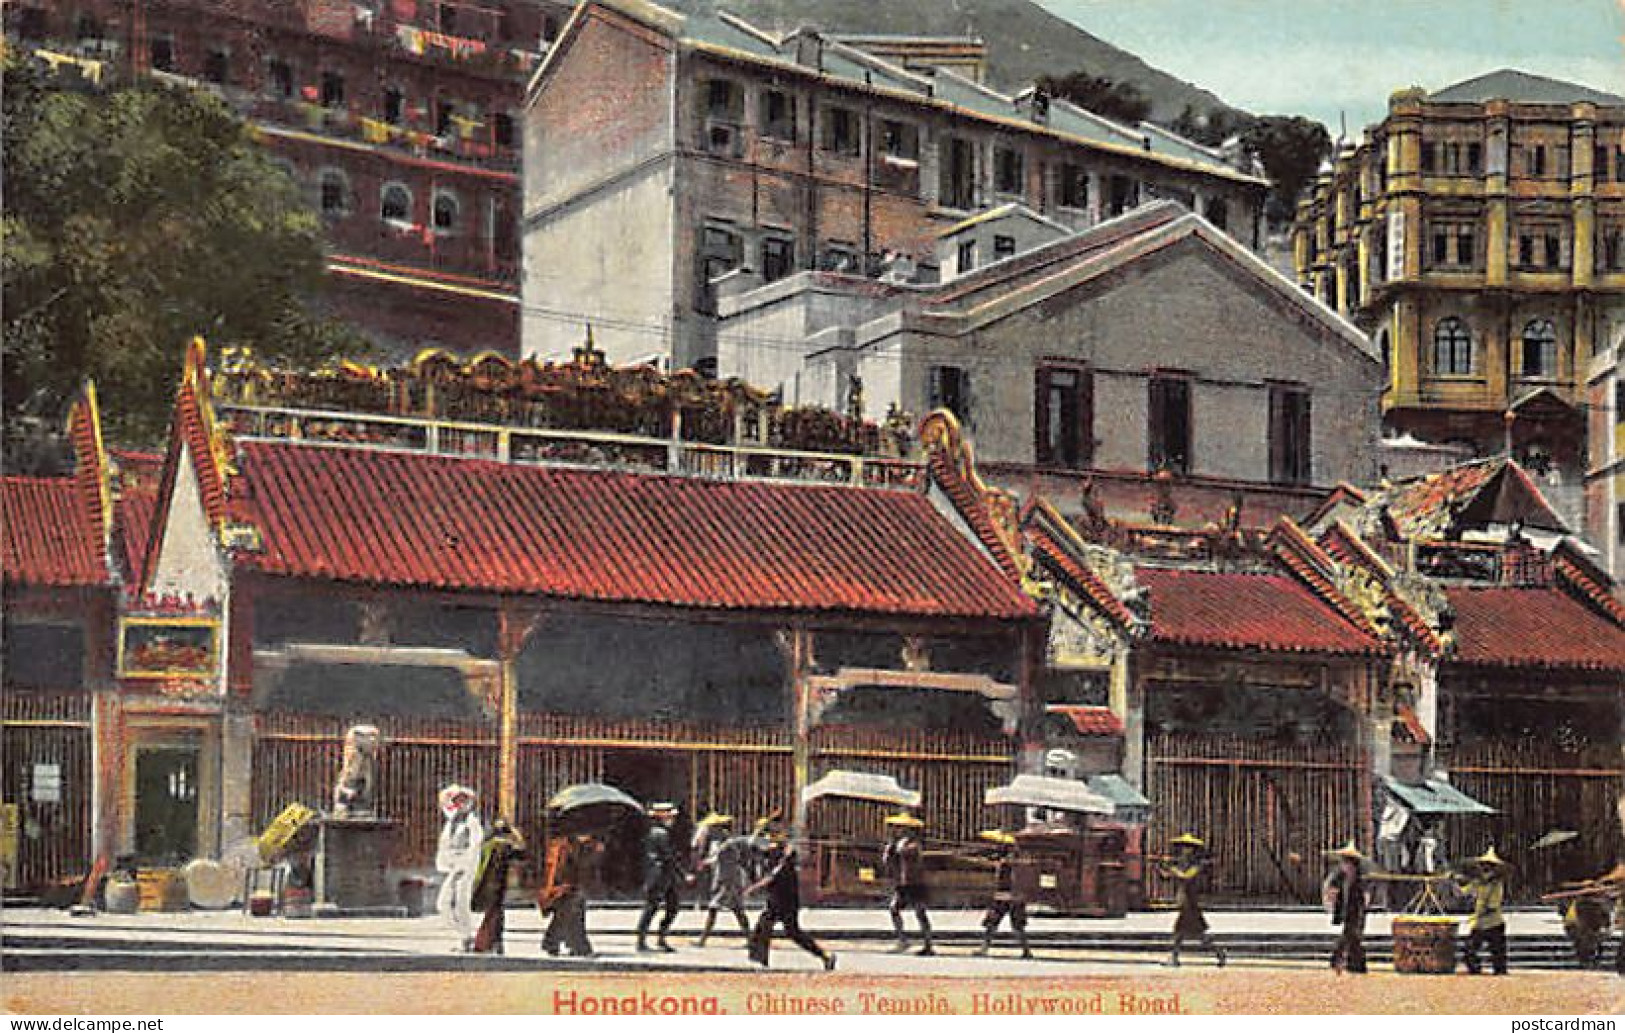 China - HONG KONG - Chinese Temple, Hollywood Road - Publ. Turco-Egyptian Tobacco Store  - Cina (Hong Kong)